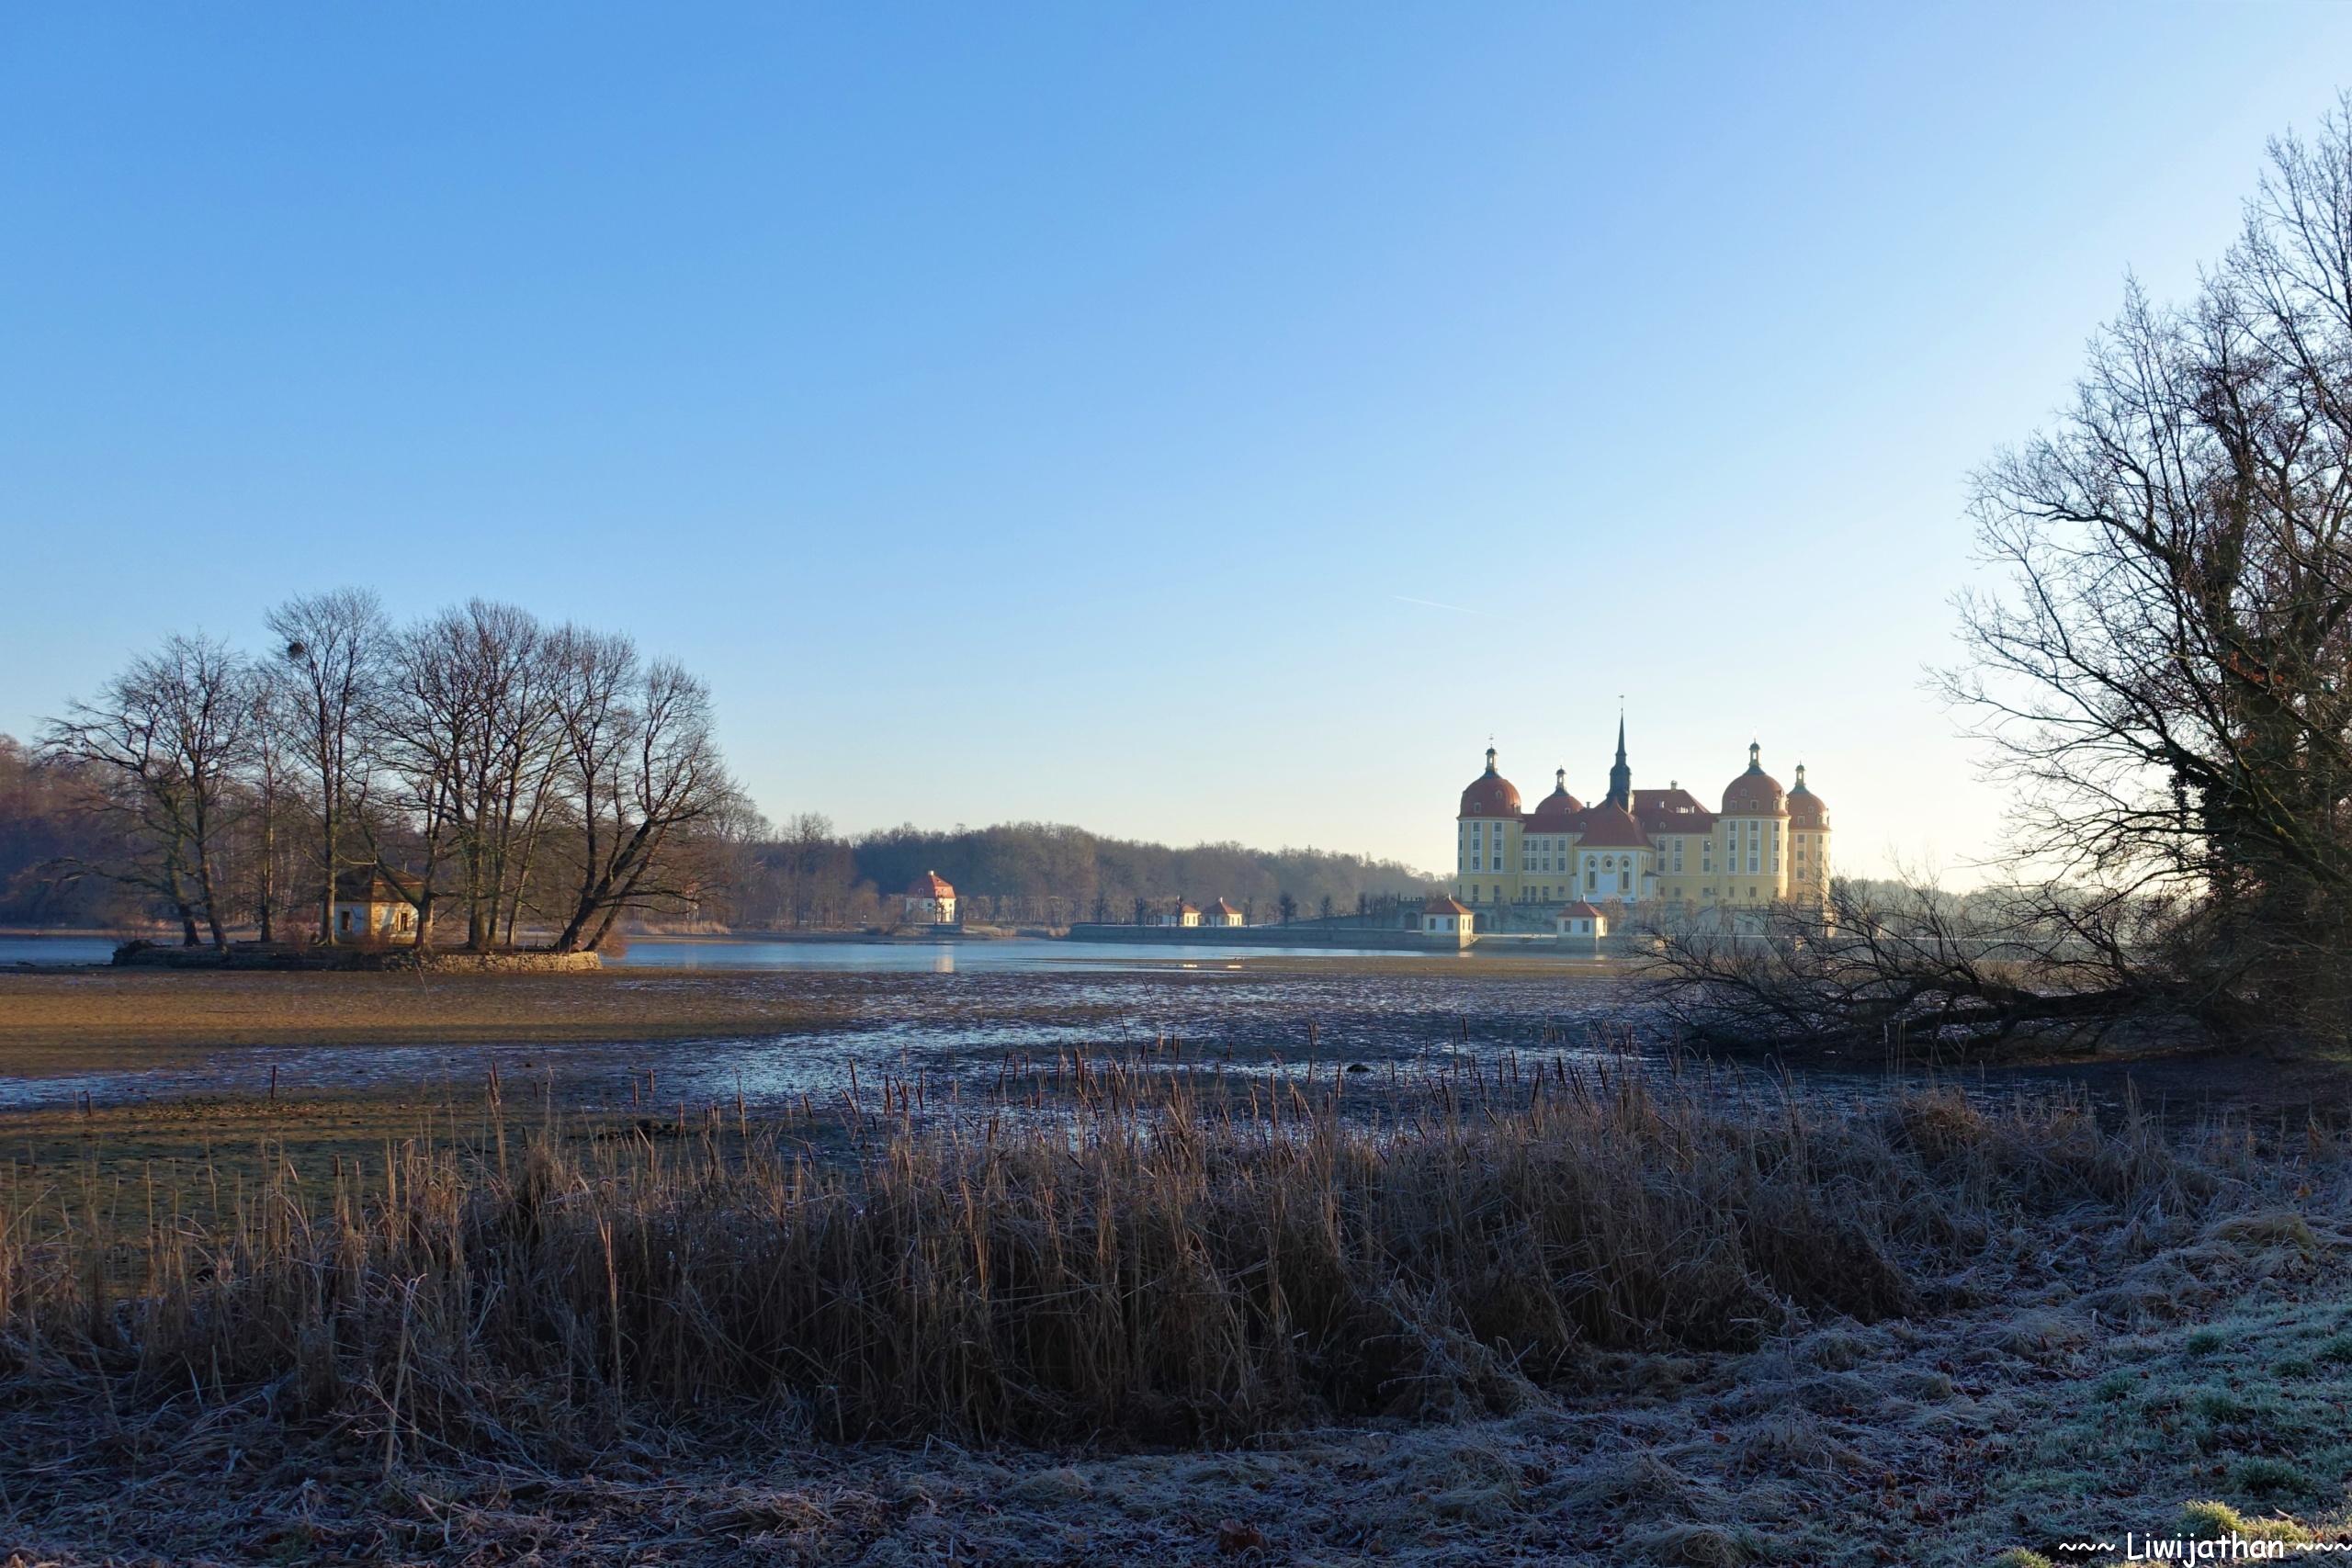 Schloss Moritzburg